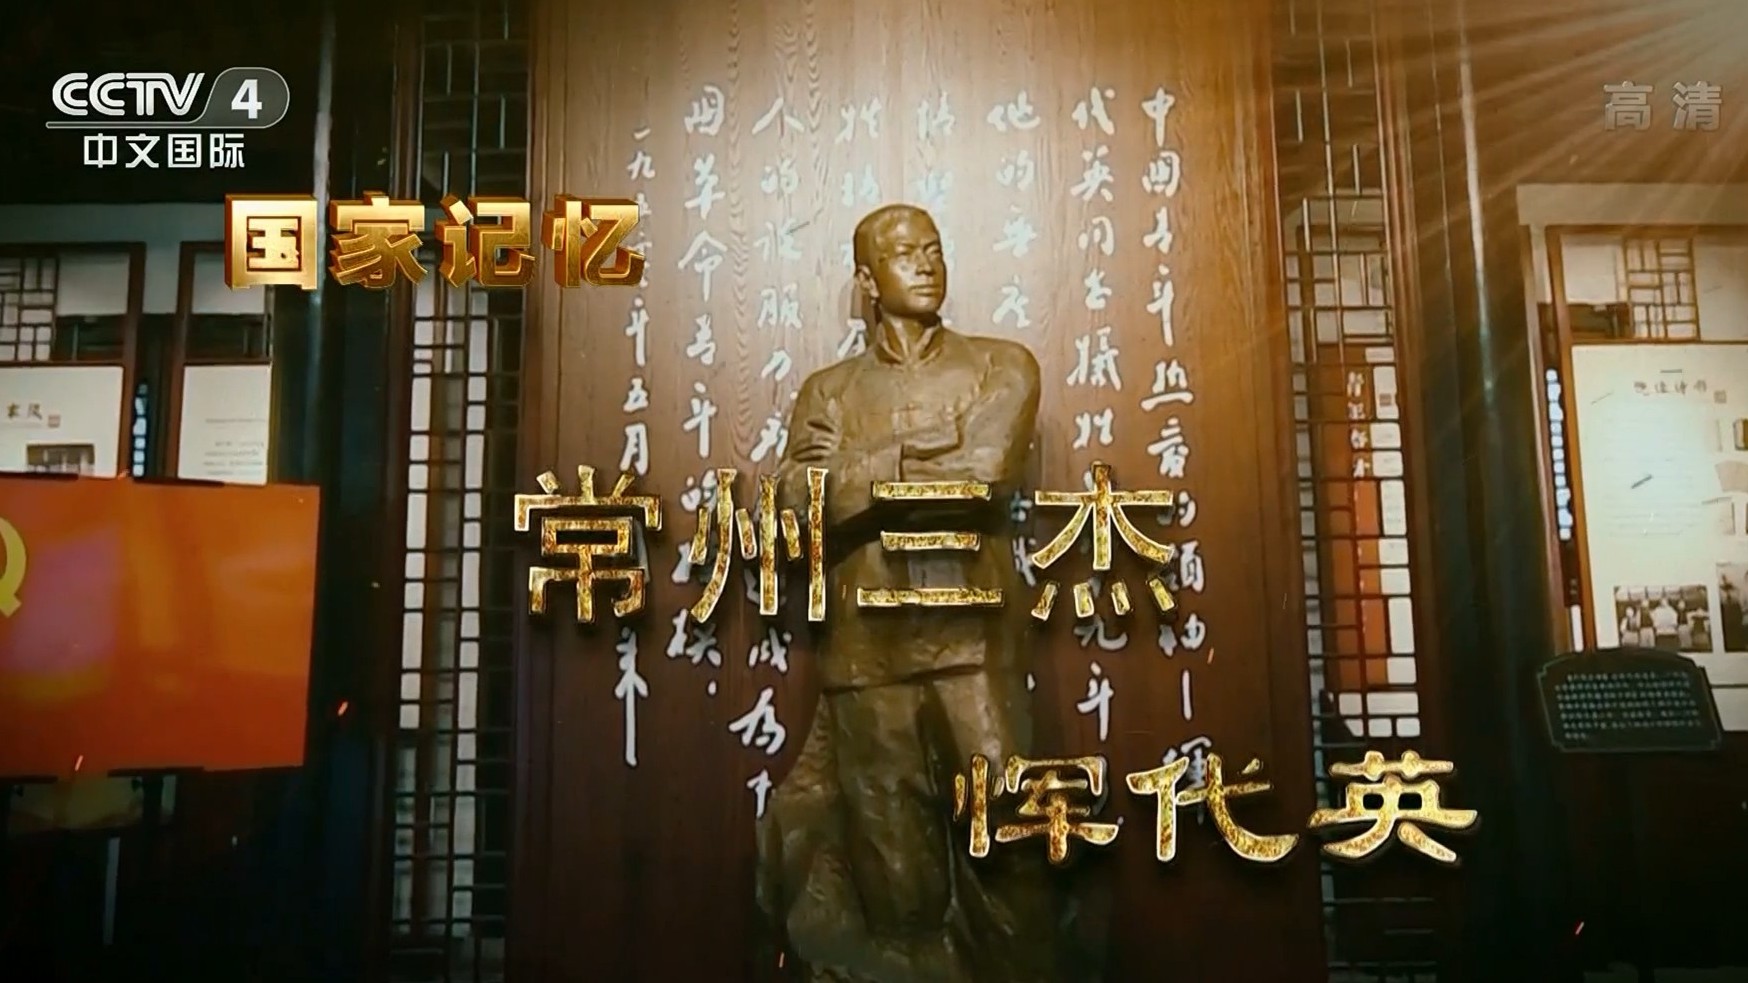 央视国家记忆系列《常州三杰 2021》汉语中字 1080i